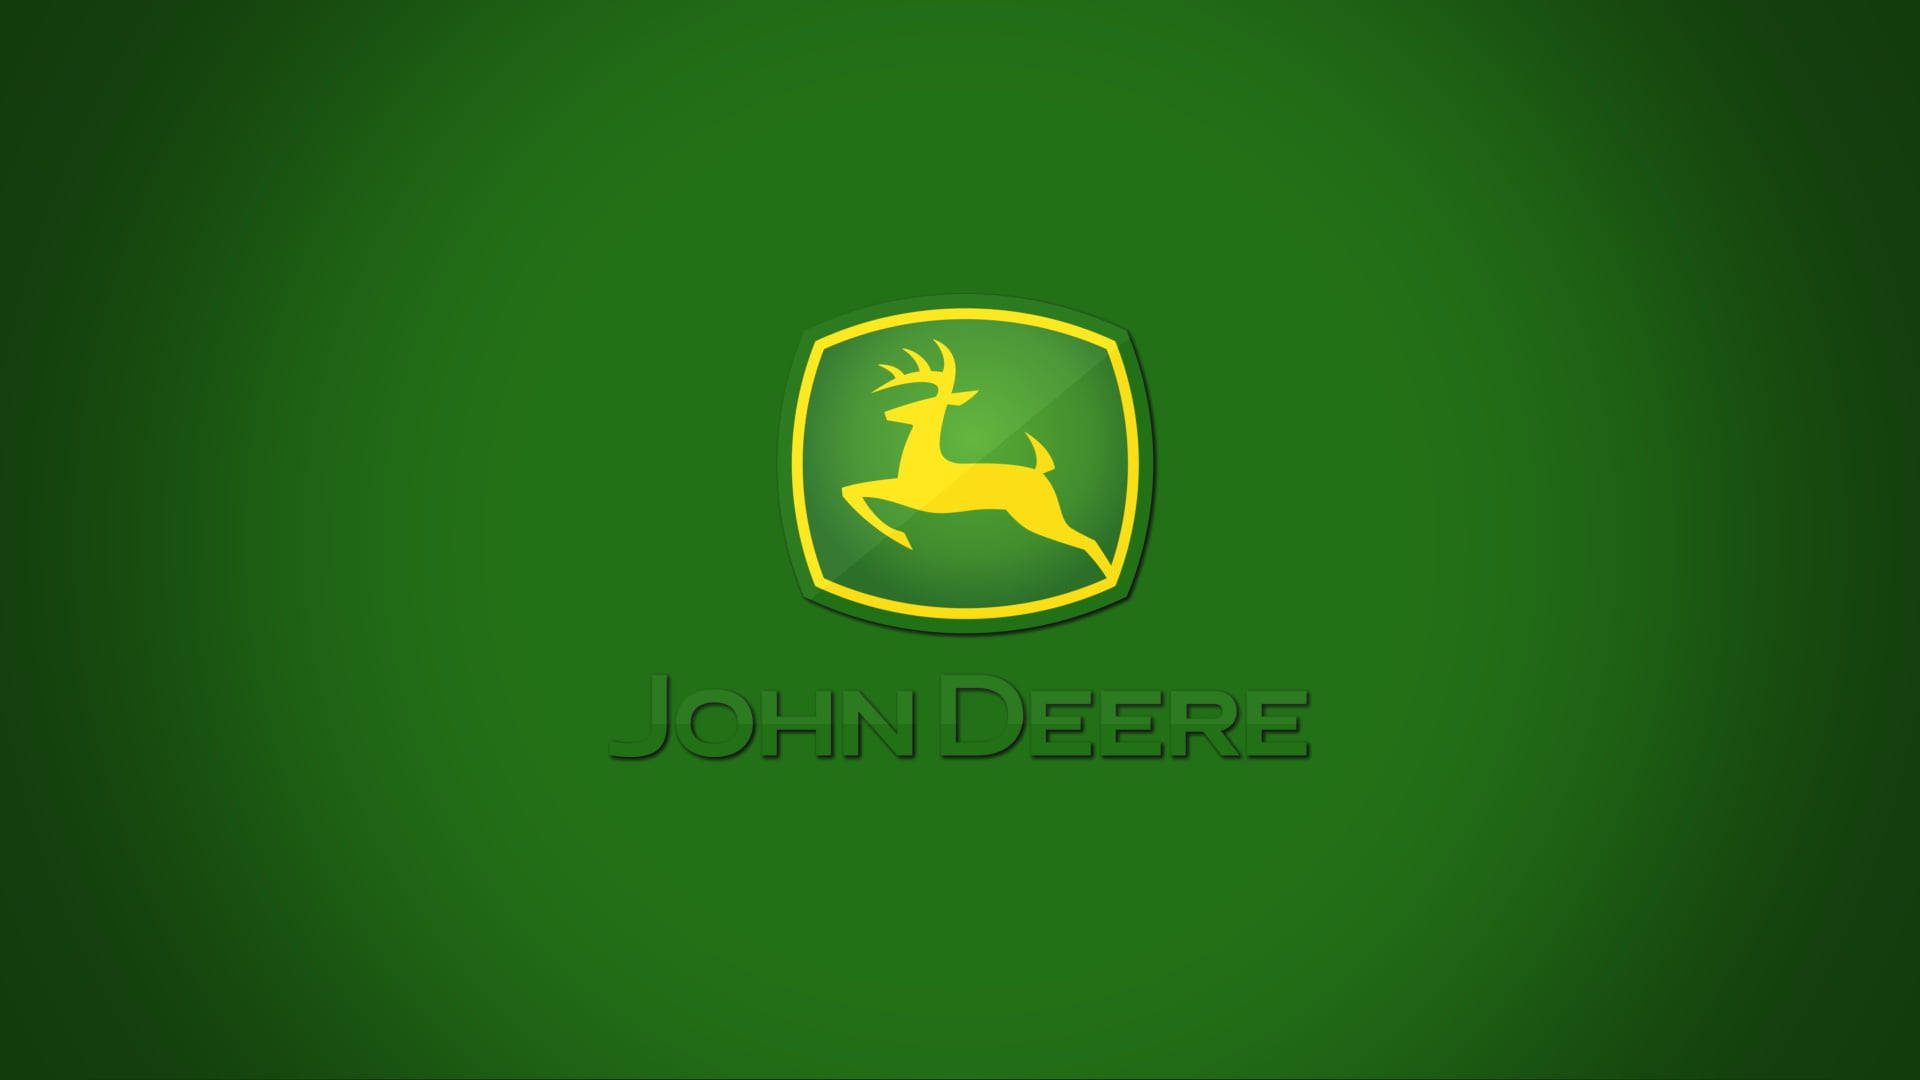 100+] John Deere Wallpapers